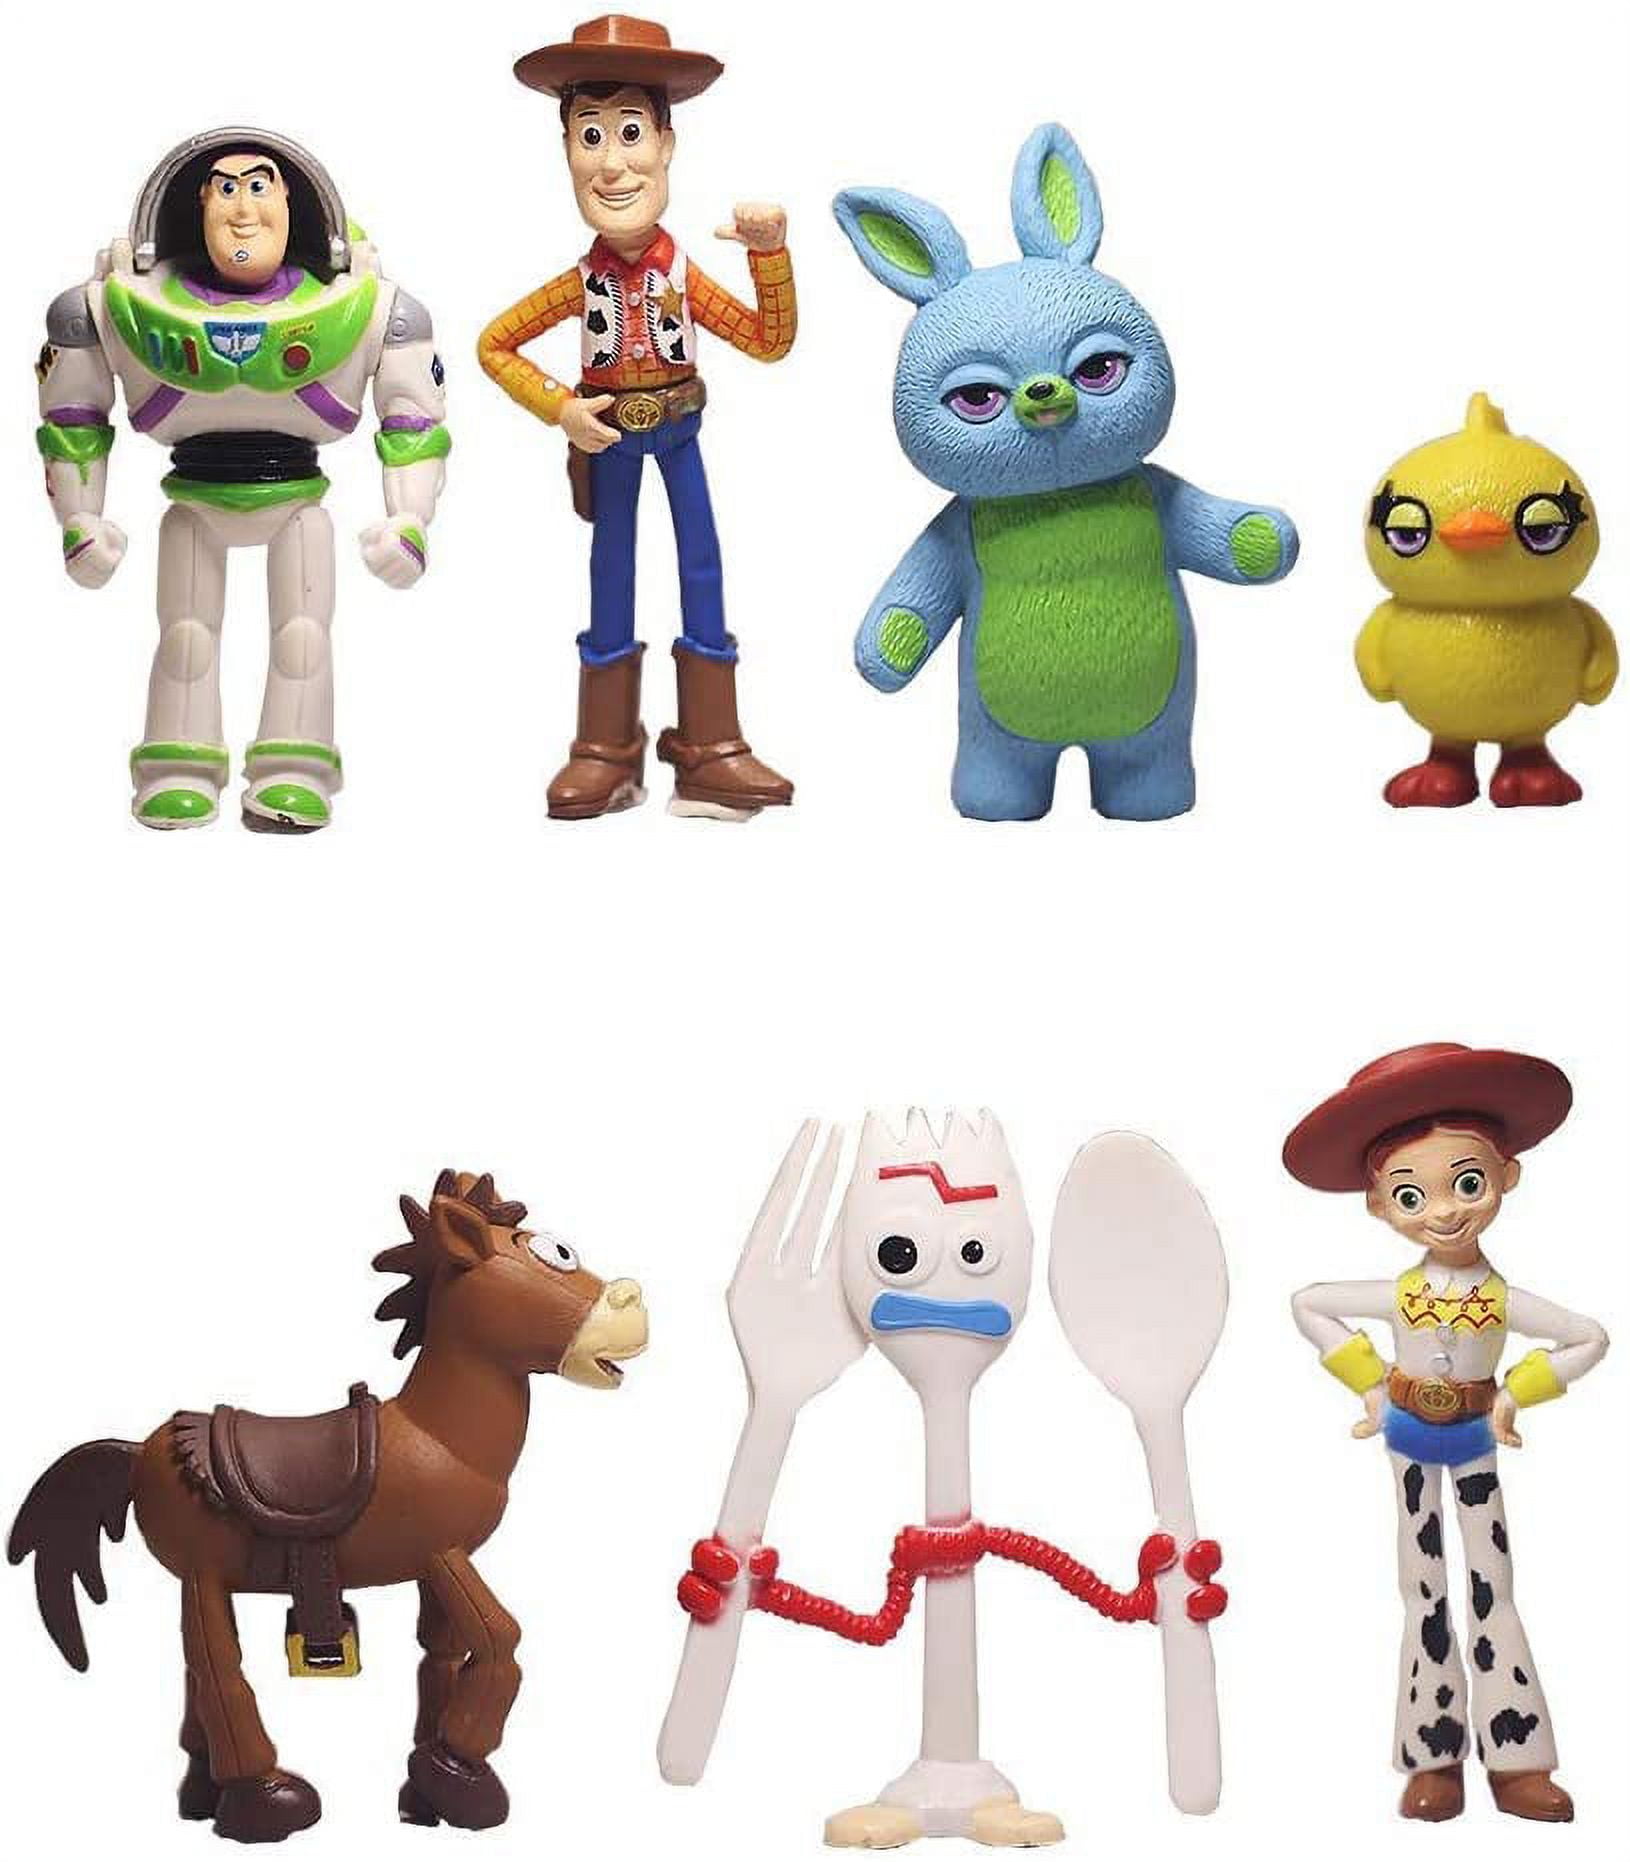 Toy Story Classic Figurine Set Com 5 Personagens Disney